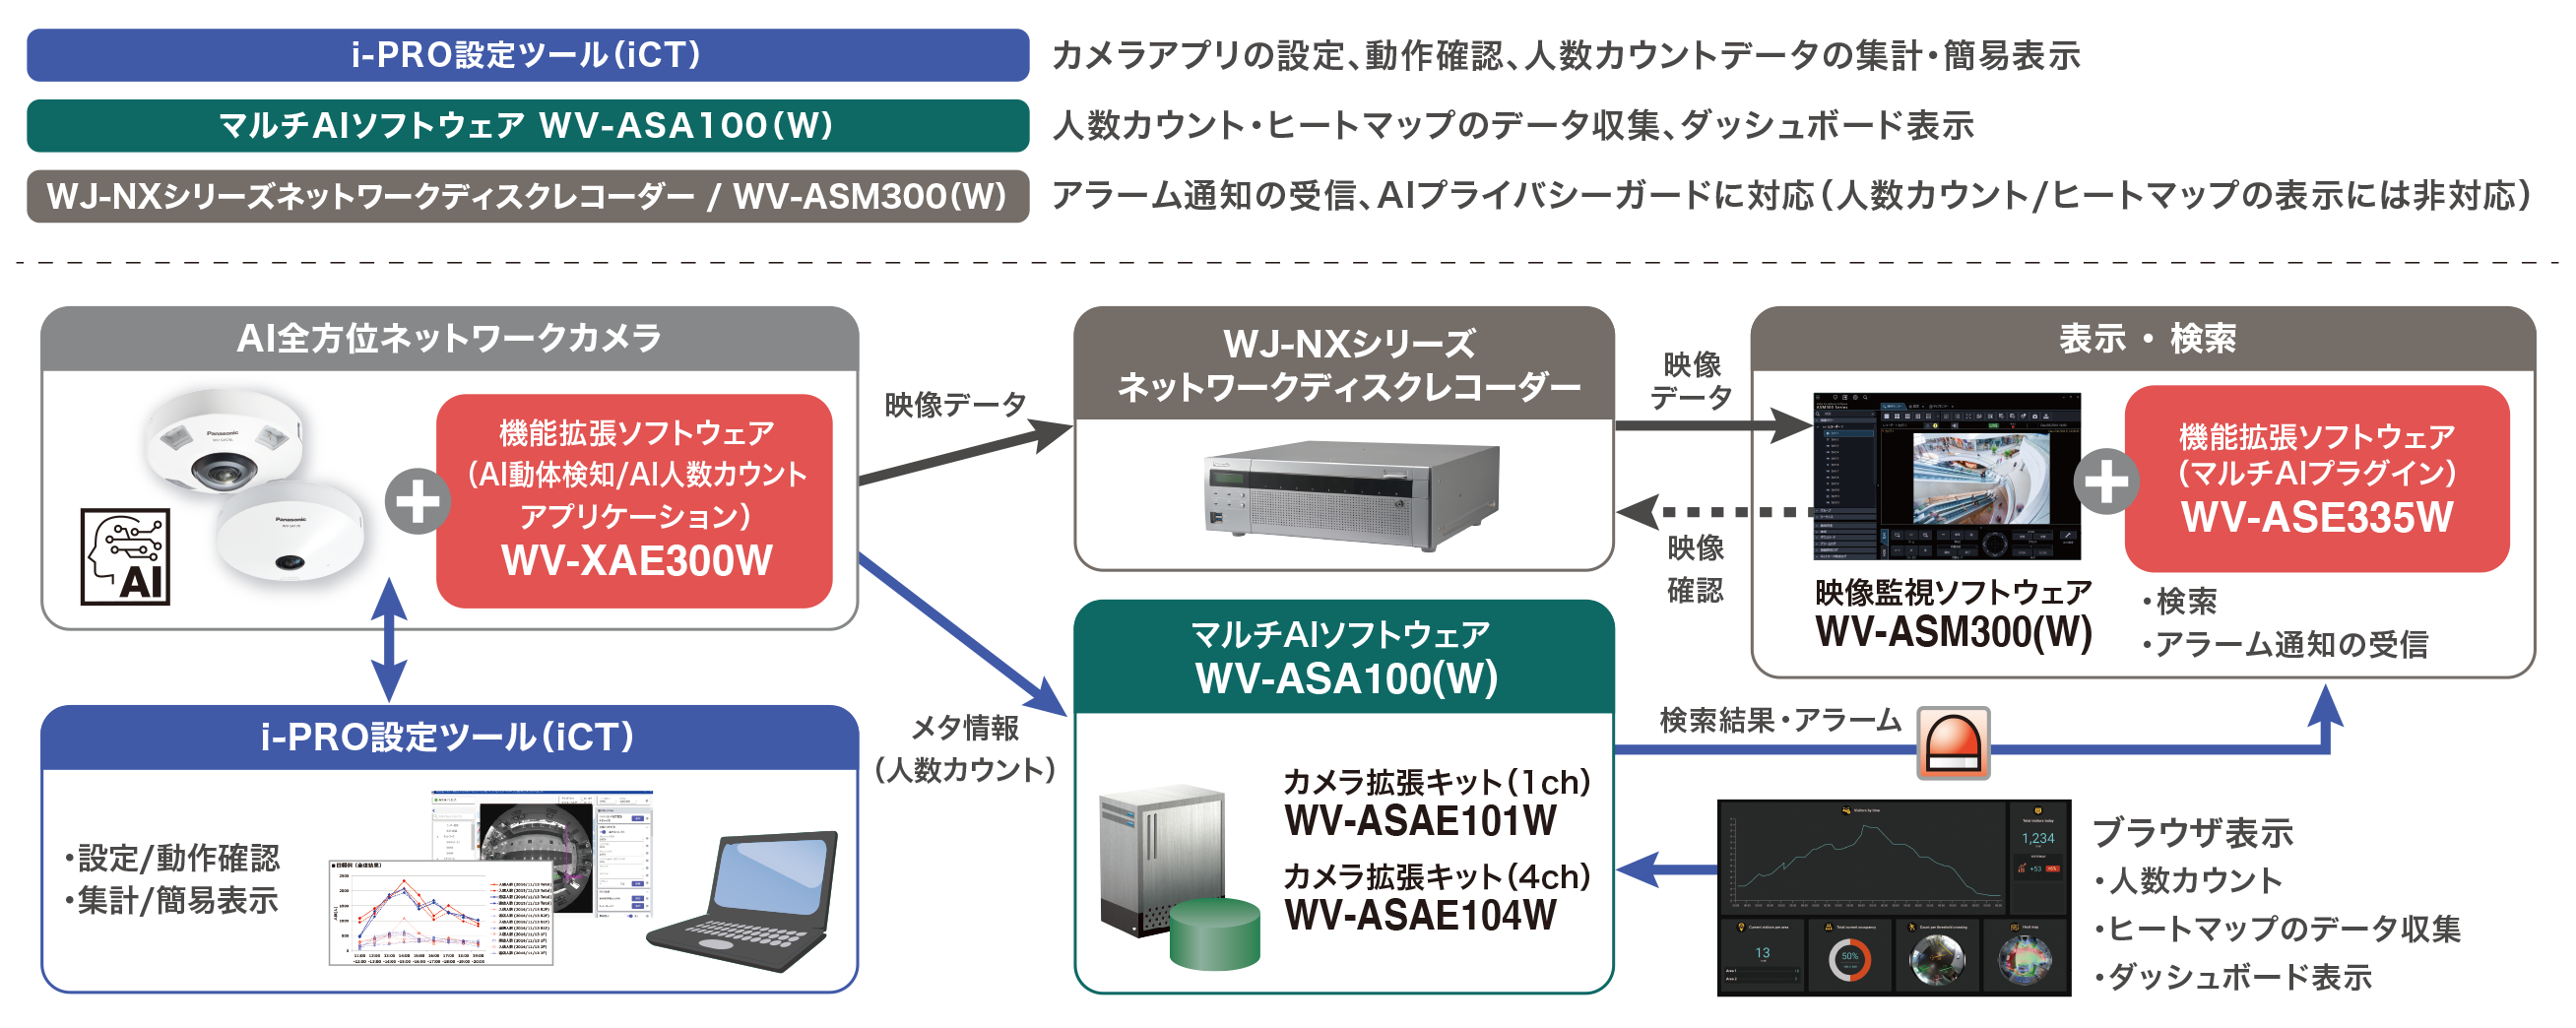 AI全方位ネットワークカメラ1台に機能拡張ソフトウェア（AI動体検知/AI人数カウントアプリケーション）を追加。i-PRO設定ツール（iCT）でカメラアプリの設定、動作確認、人数カウントデータの集計・簡易表示を行う。マルチAIソフトウェア WV-ASA100（W）で人数カウント・ヒートマップのデータ収集、ダッシュボード表示を行う。WJ-NXシリーズネットワークディスクレコーダー / WV-ASM300（W）は、アラーム通知の受信、AIプライバシーガードに対応する。（人数カウント/ヒートマップの表示には非対応）